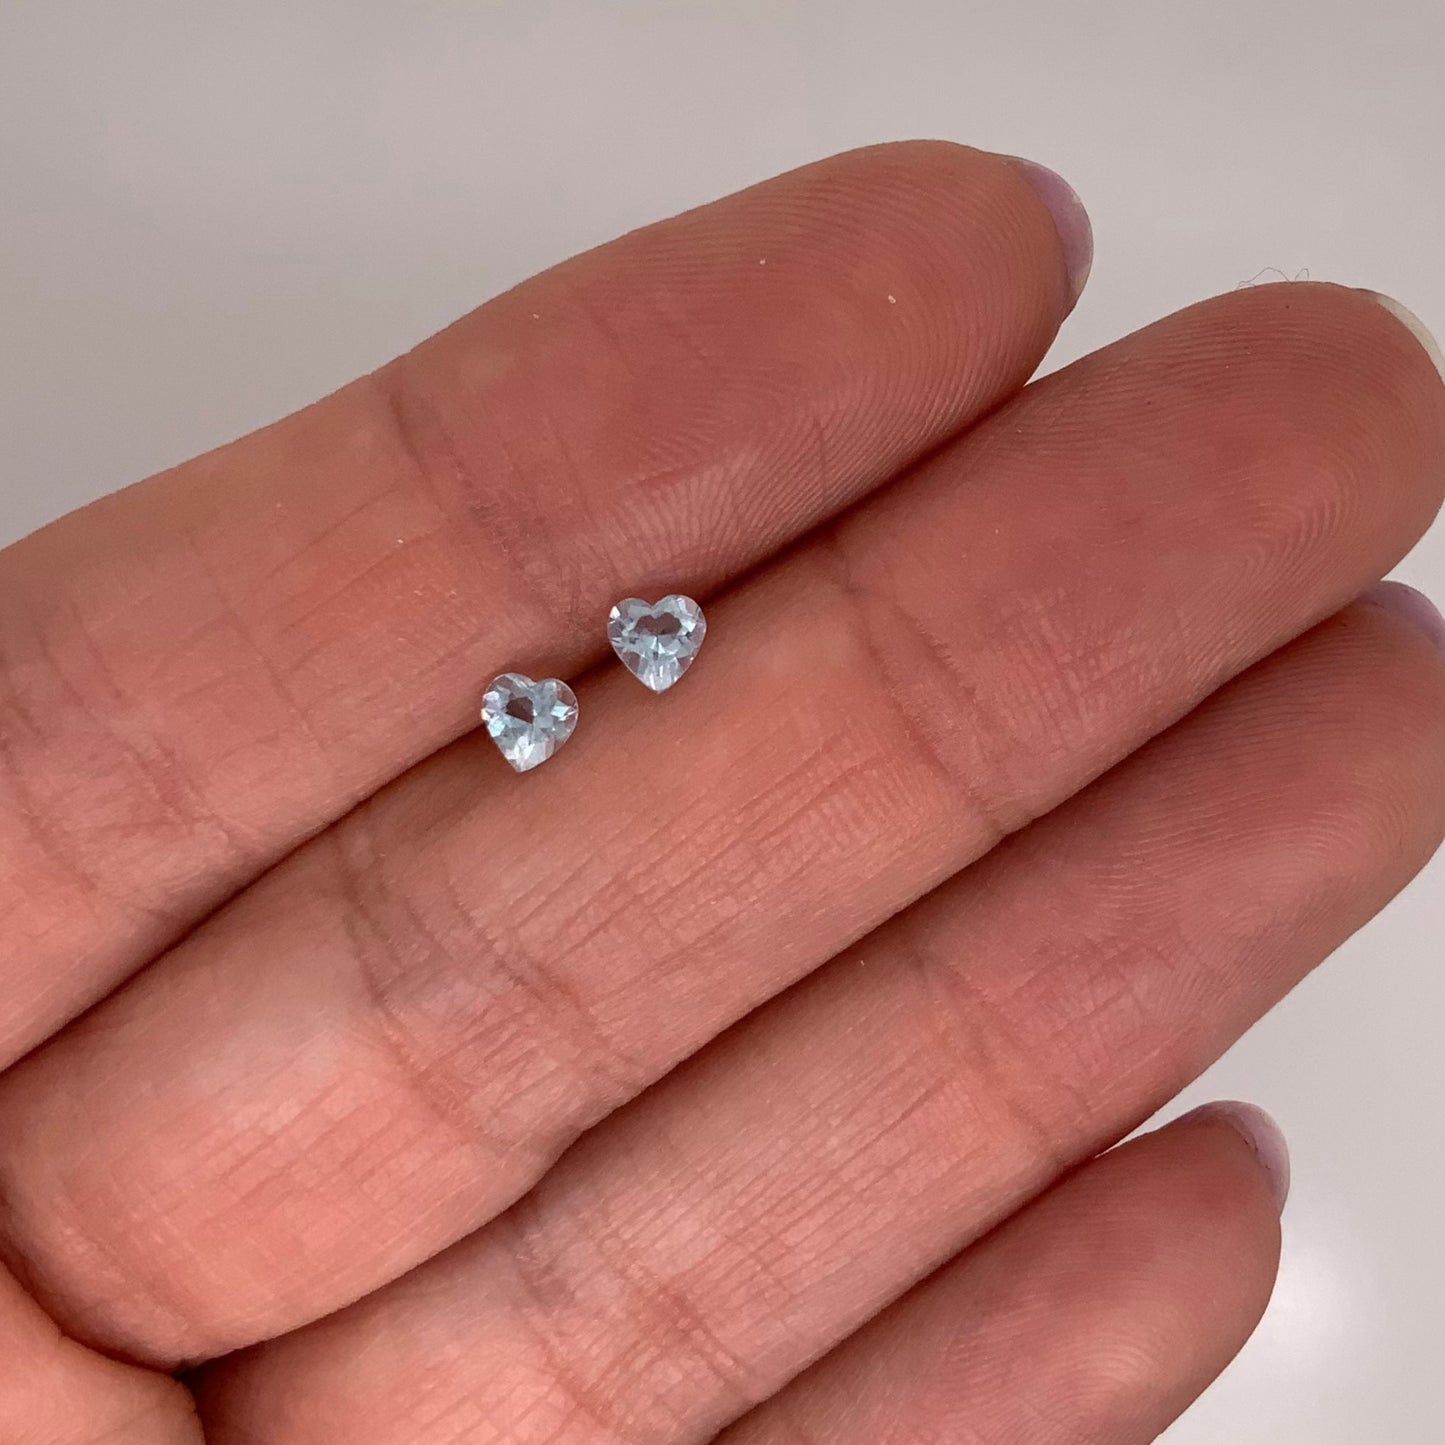 Par de Topacios Swiss Blue corte Corazón de 0.50ct para aretes, medidas 4x4mm